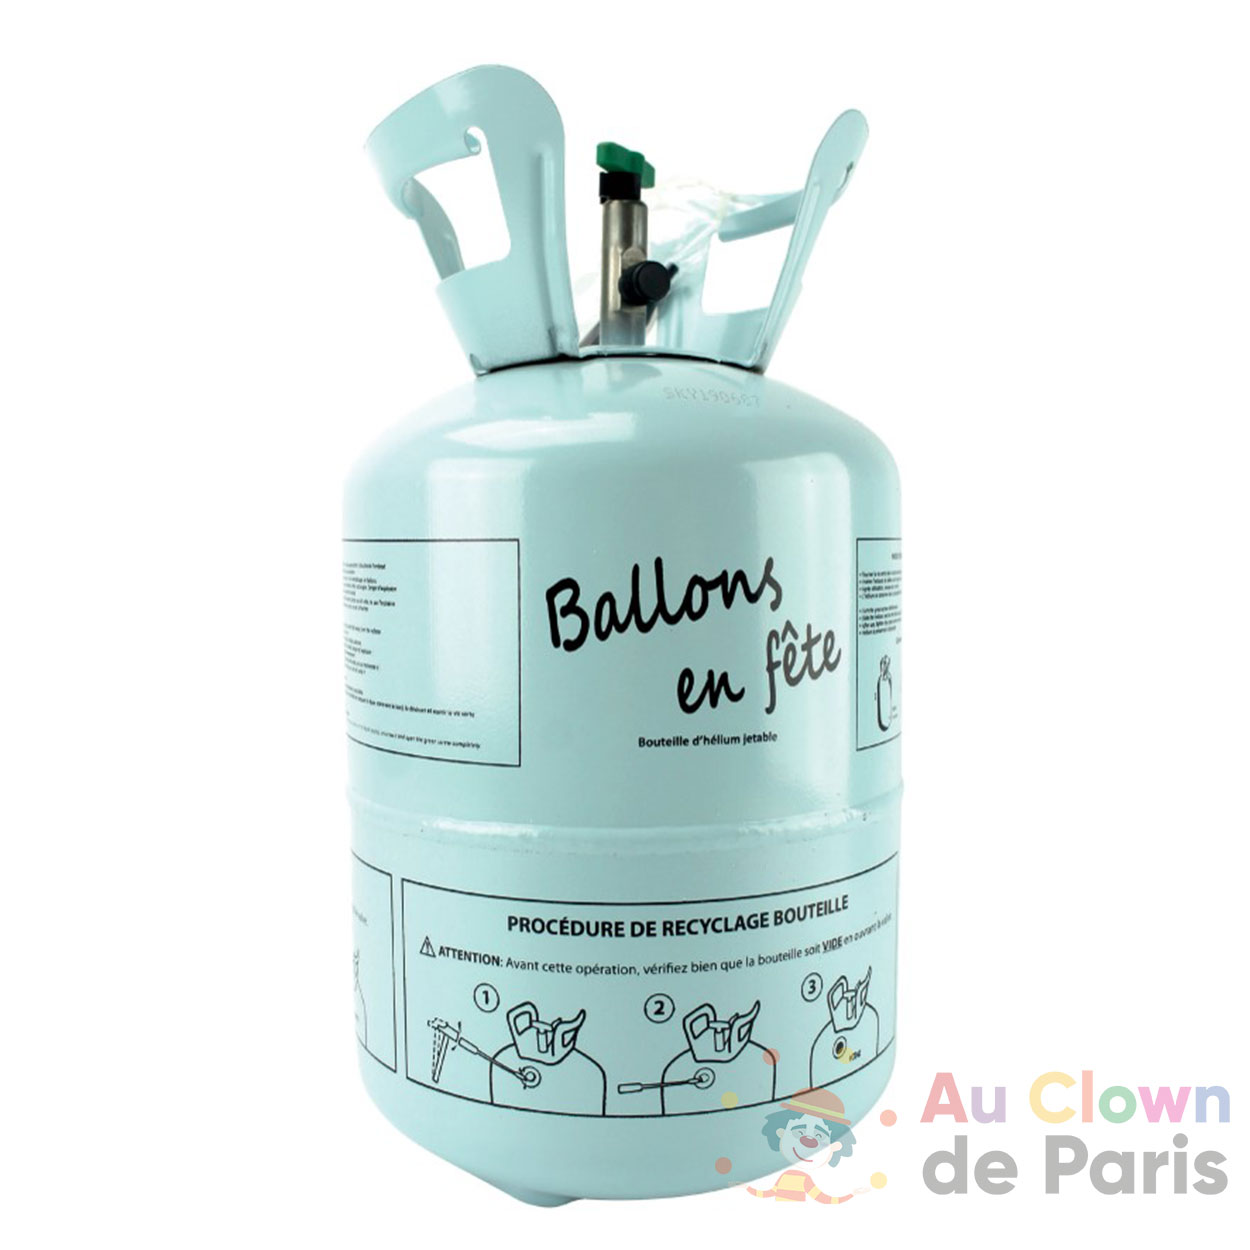 Hélium 0,25 m3 pour Gonfler 30 ballons Ø 23 cm (Bouteille jetable)